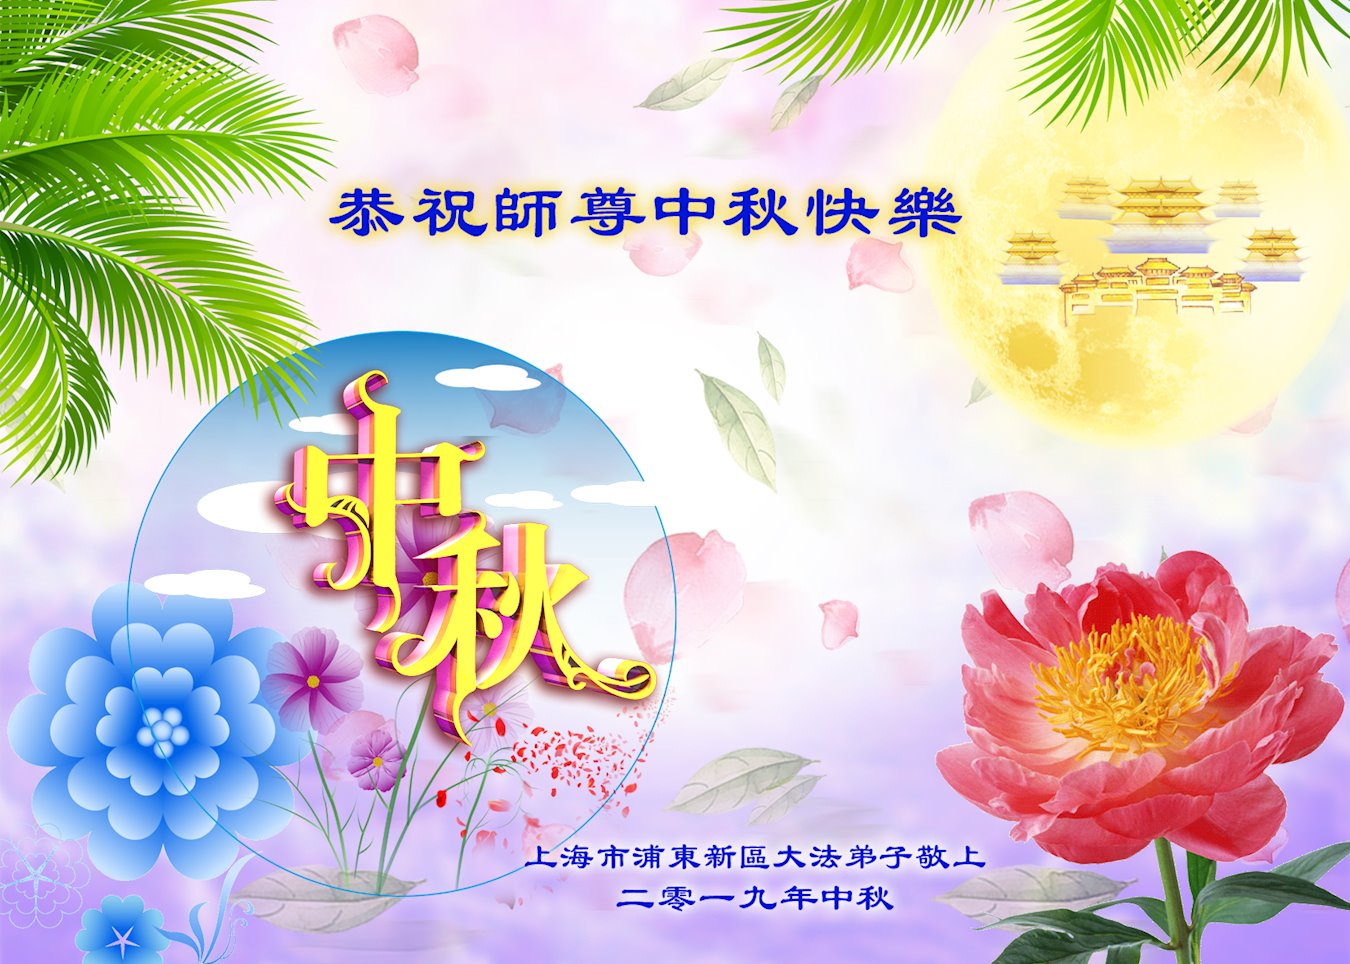 Image for article Les pratiquants de Falun Dafa de la ville de Shanghai souhaitent respectueusement au vénérable Maître Li Hongzhi une joyeuse fête de la Mi-automne ! (24 vœux)